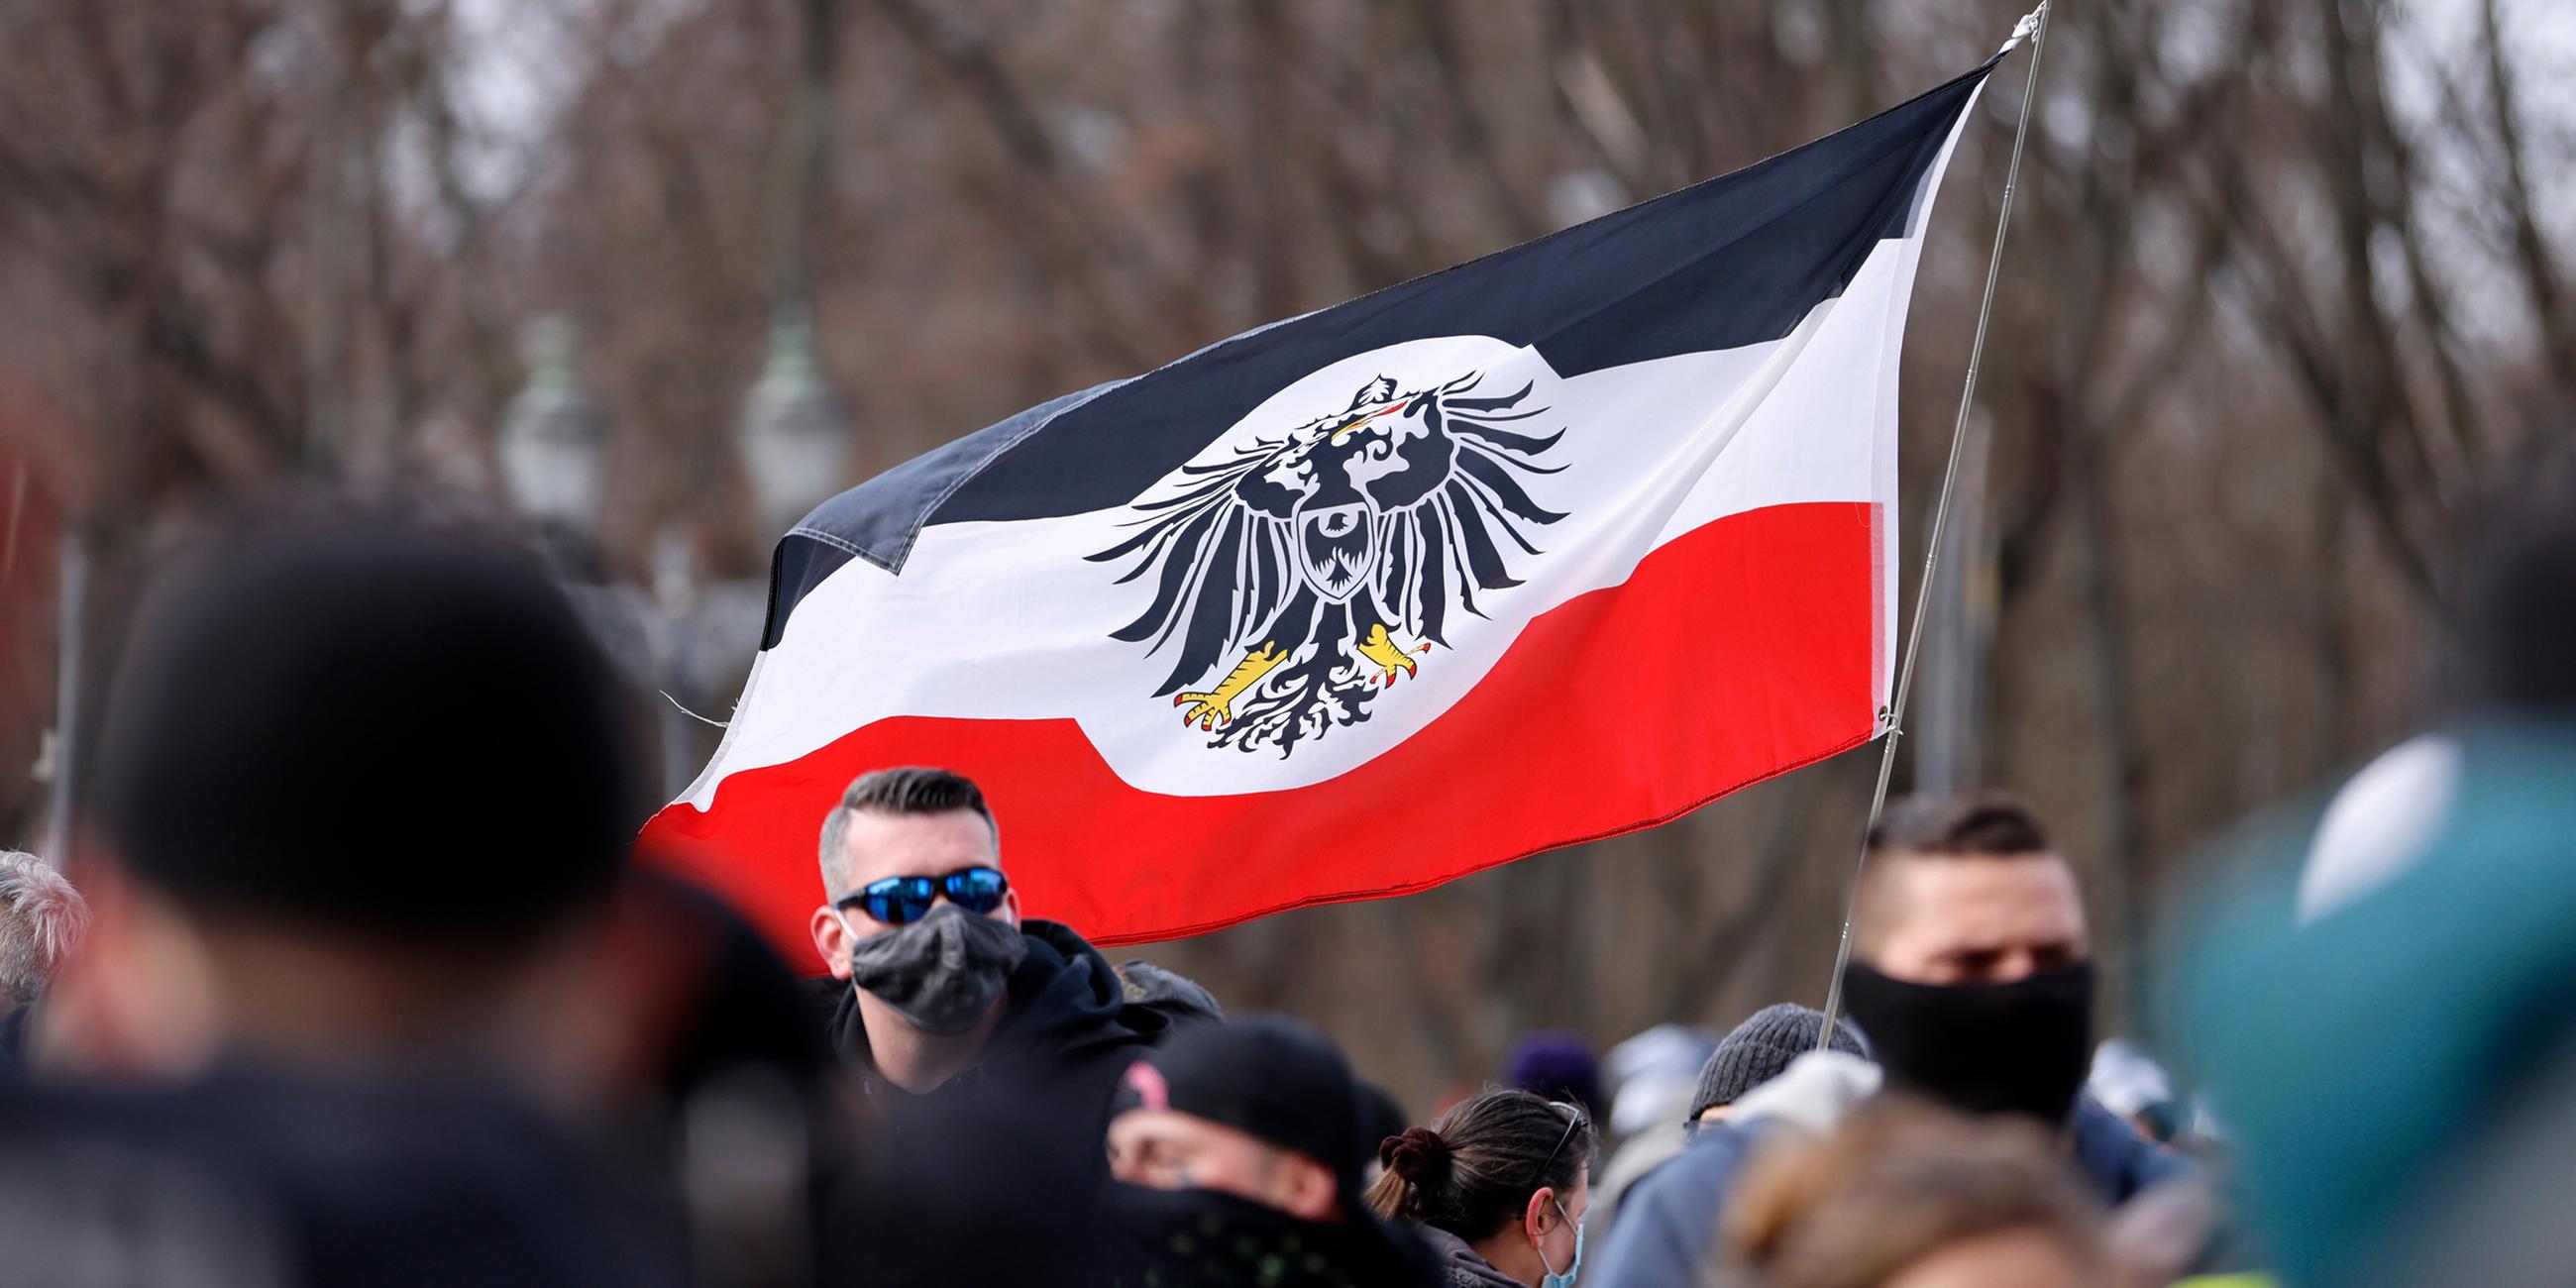 Archiv: Teilnehmer an einer Demonstration von Rechtsextremisten und Reichsbürgern in Berlin. (20.03.2021)